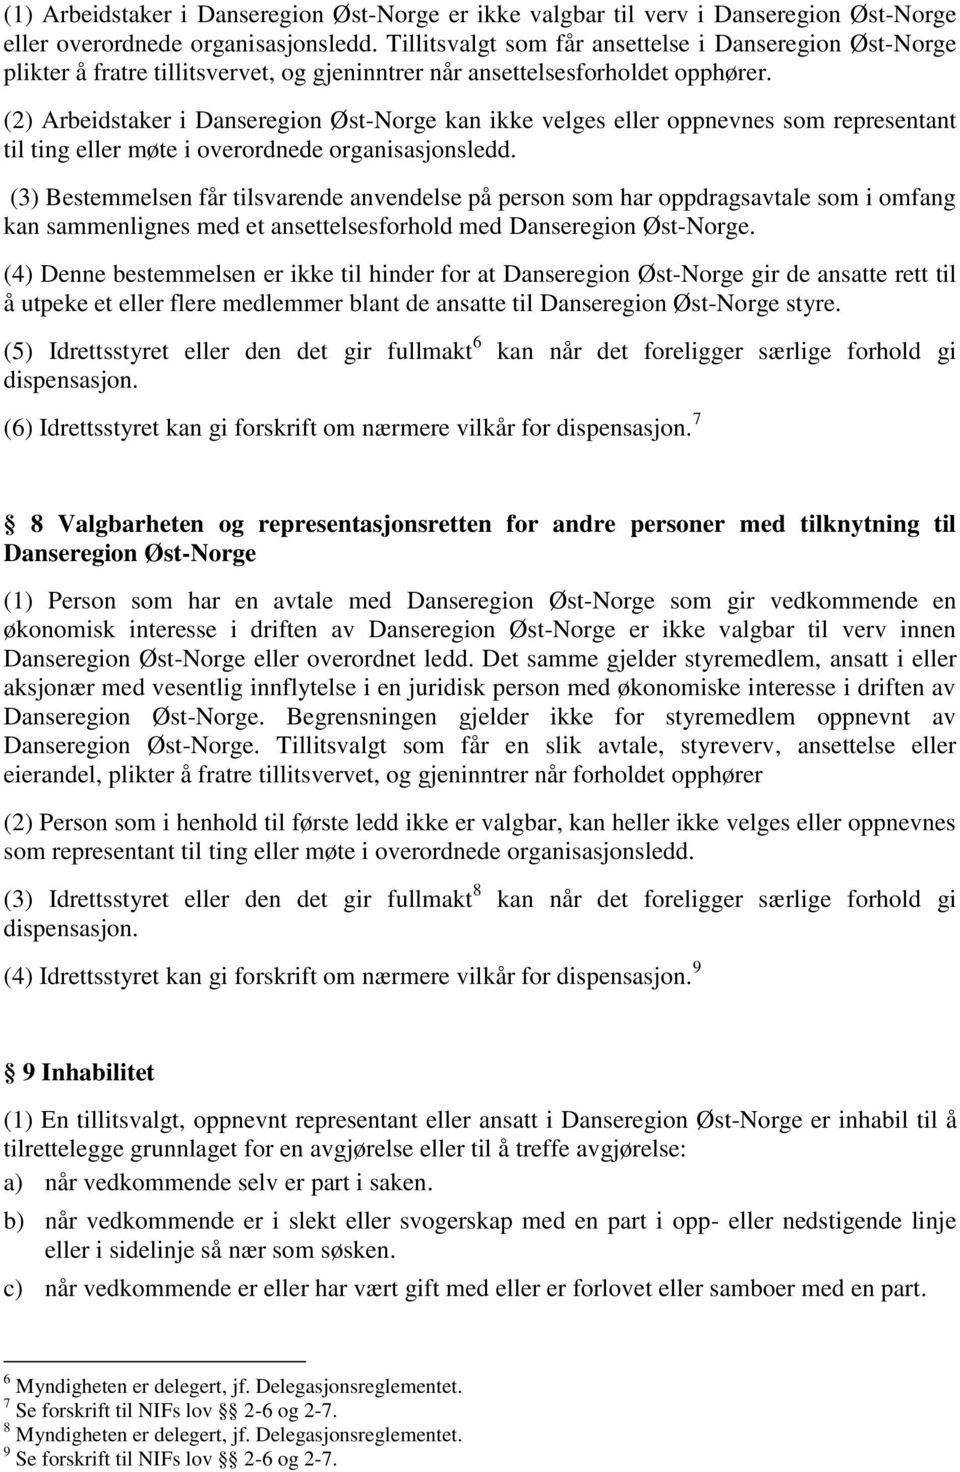 (2) Arbeidstaker i Danseregion Øst-Norge kan ikke velges eller oppnevnes som representant til ting eller møte i overordnede organisasjonsledd.